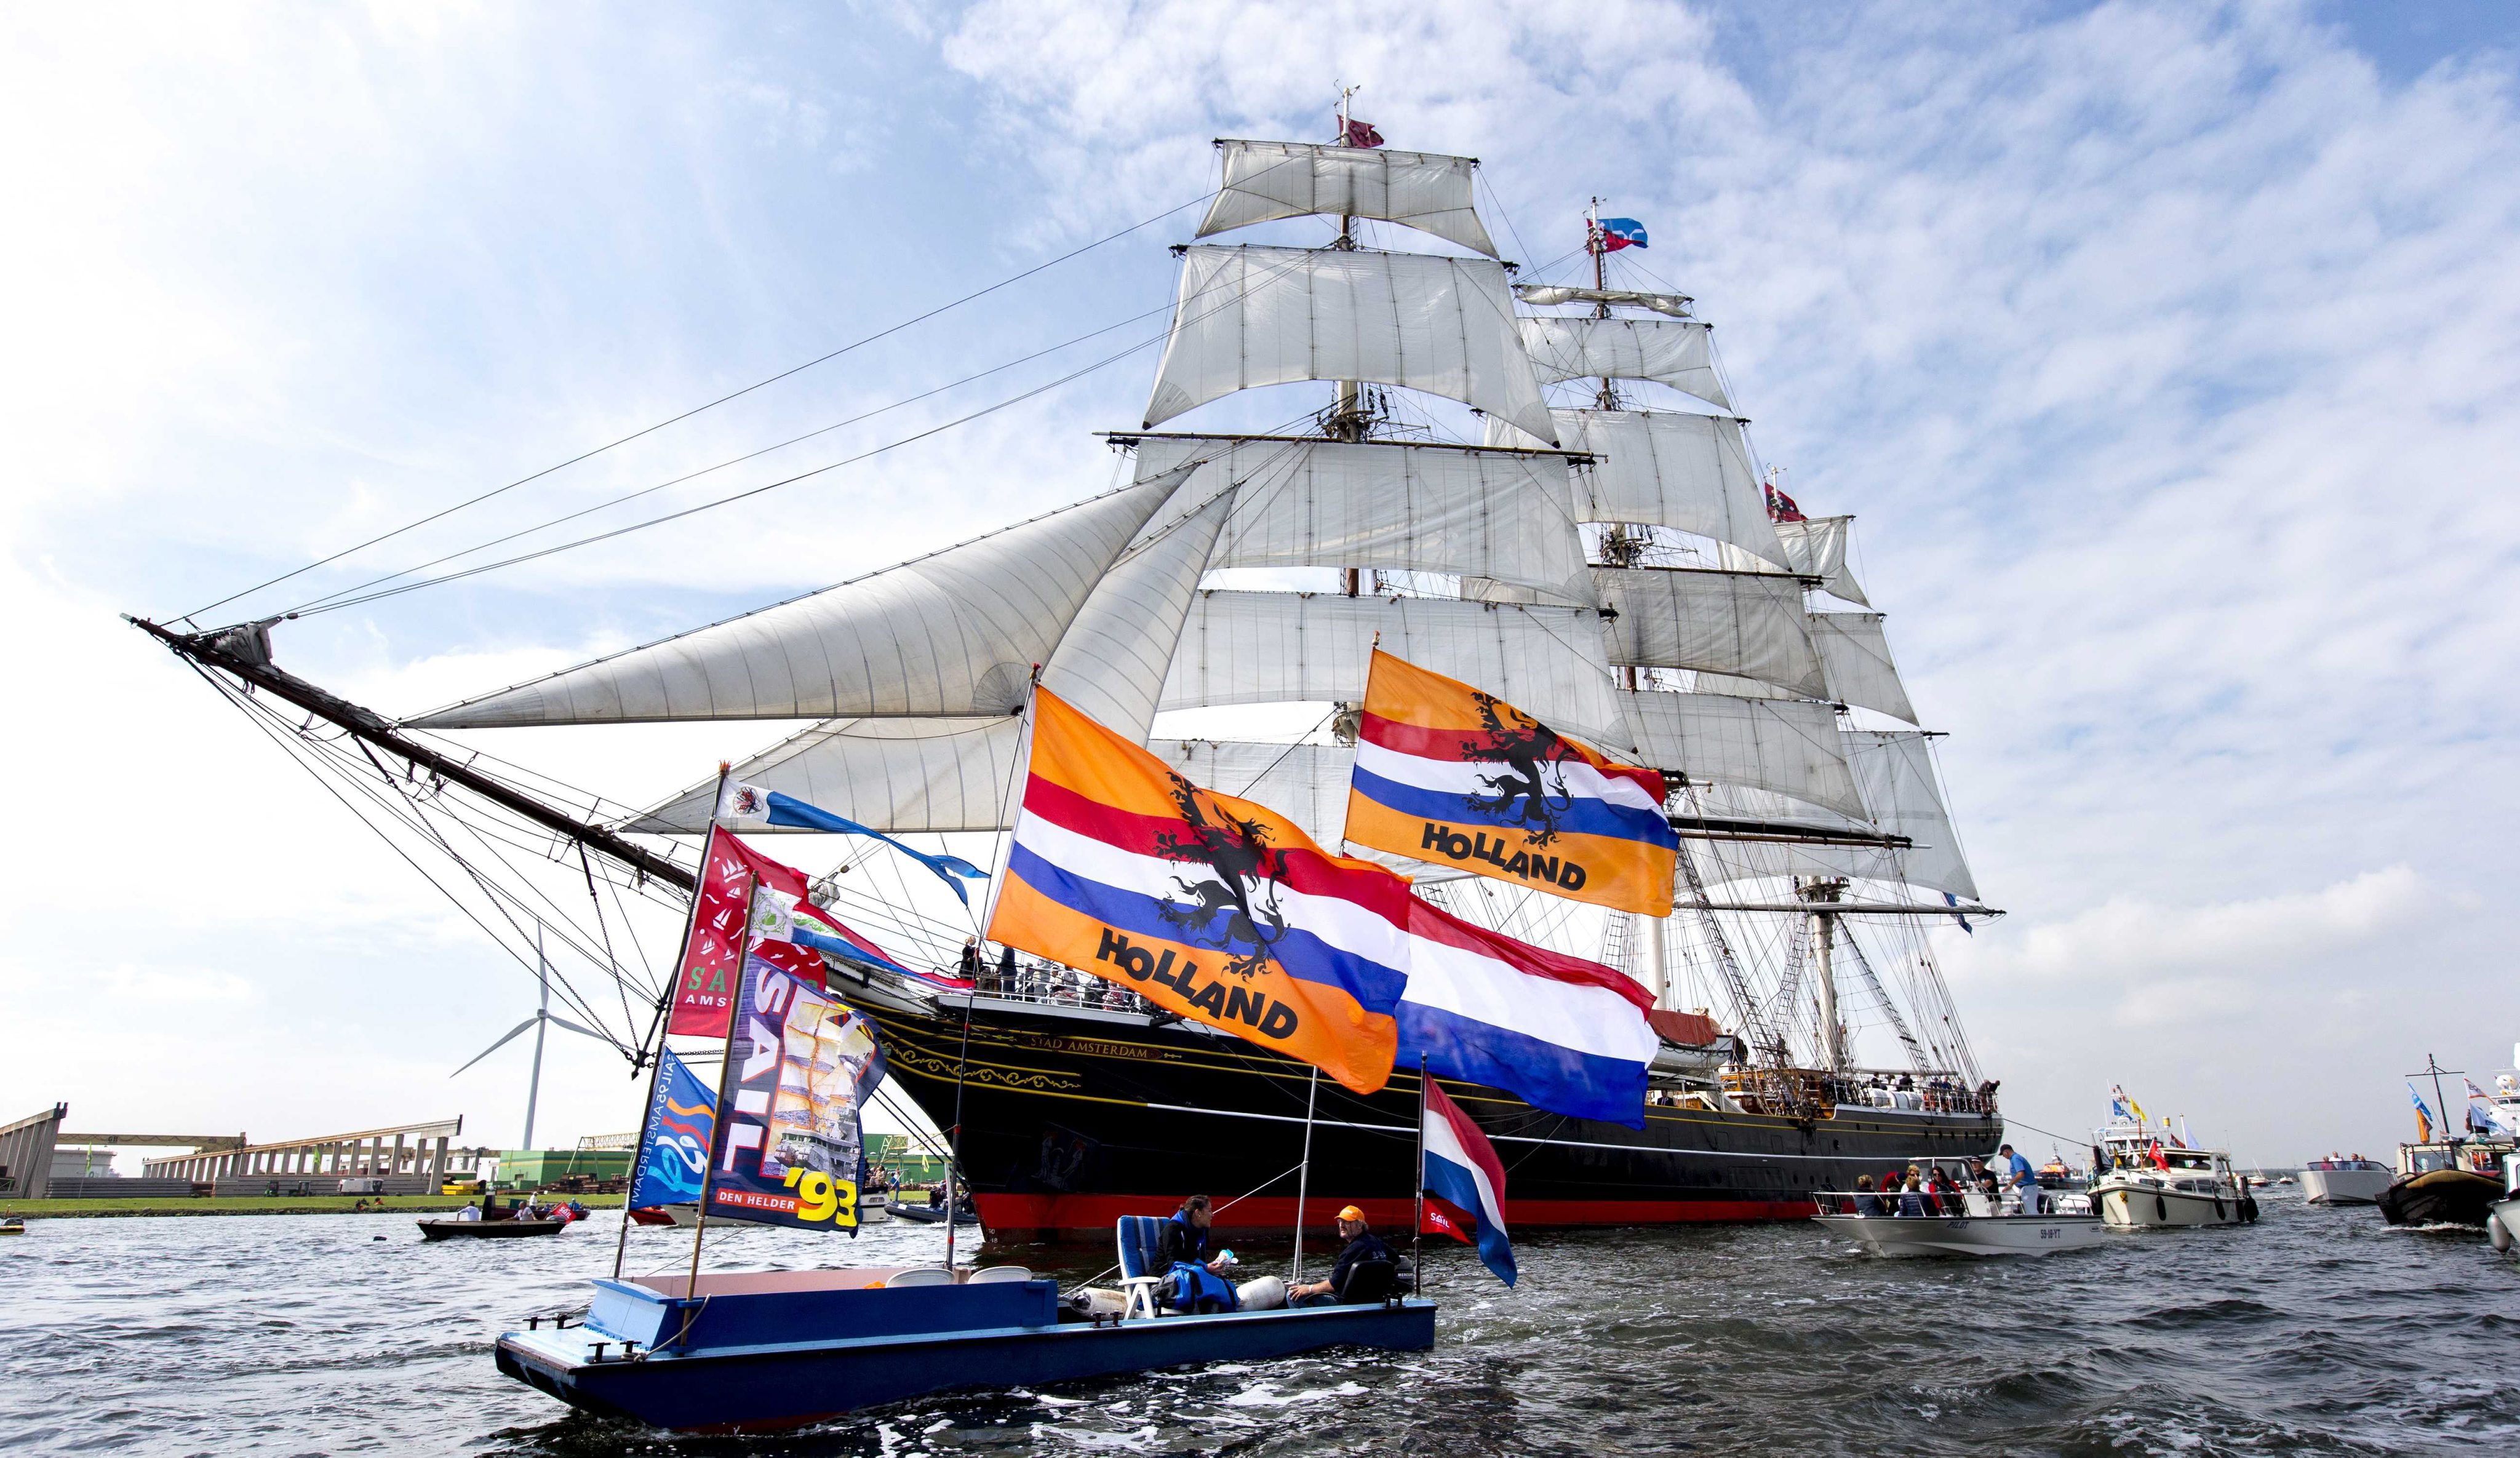 Традиционният парад на всякакви видове плавателни средства се провежда в Амстердам веднъж на всеки пет години и събира десетки хиляди зрители